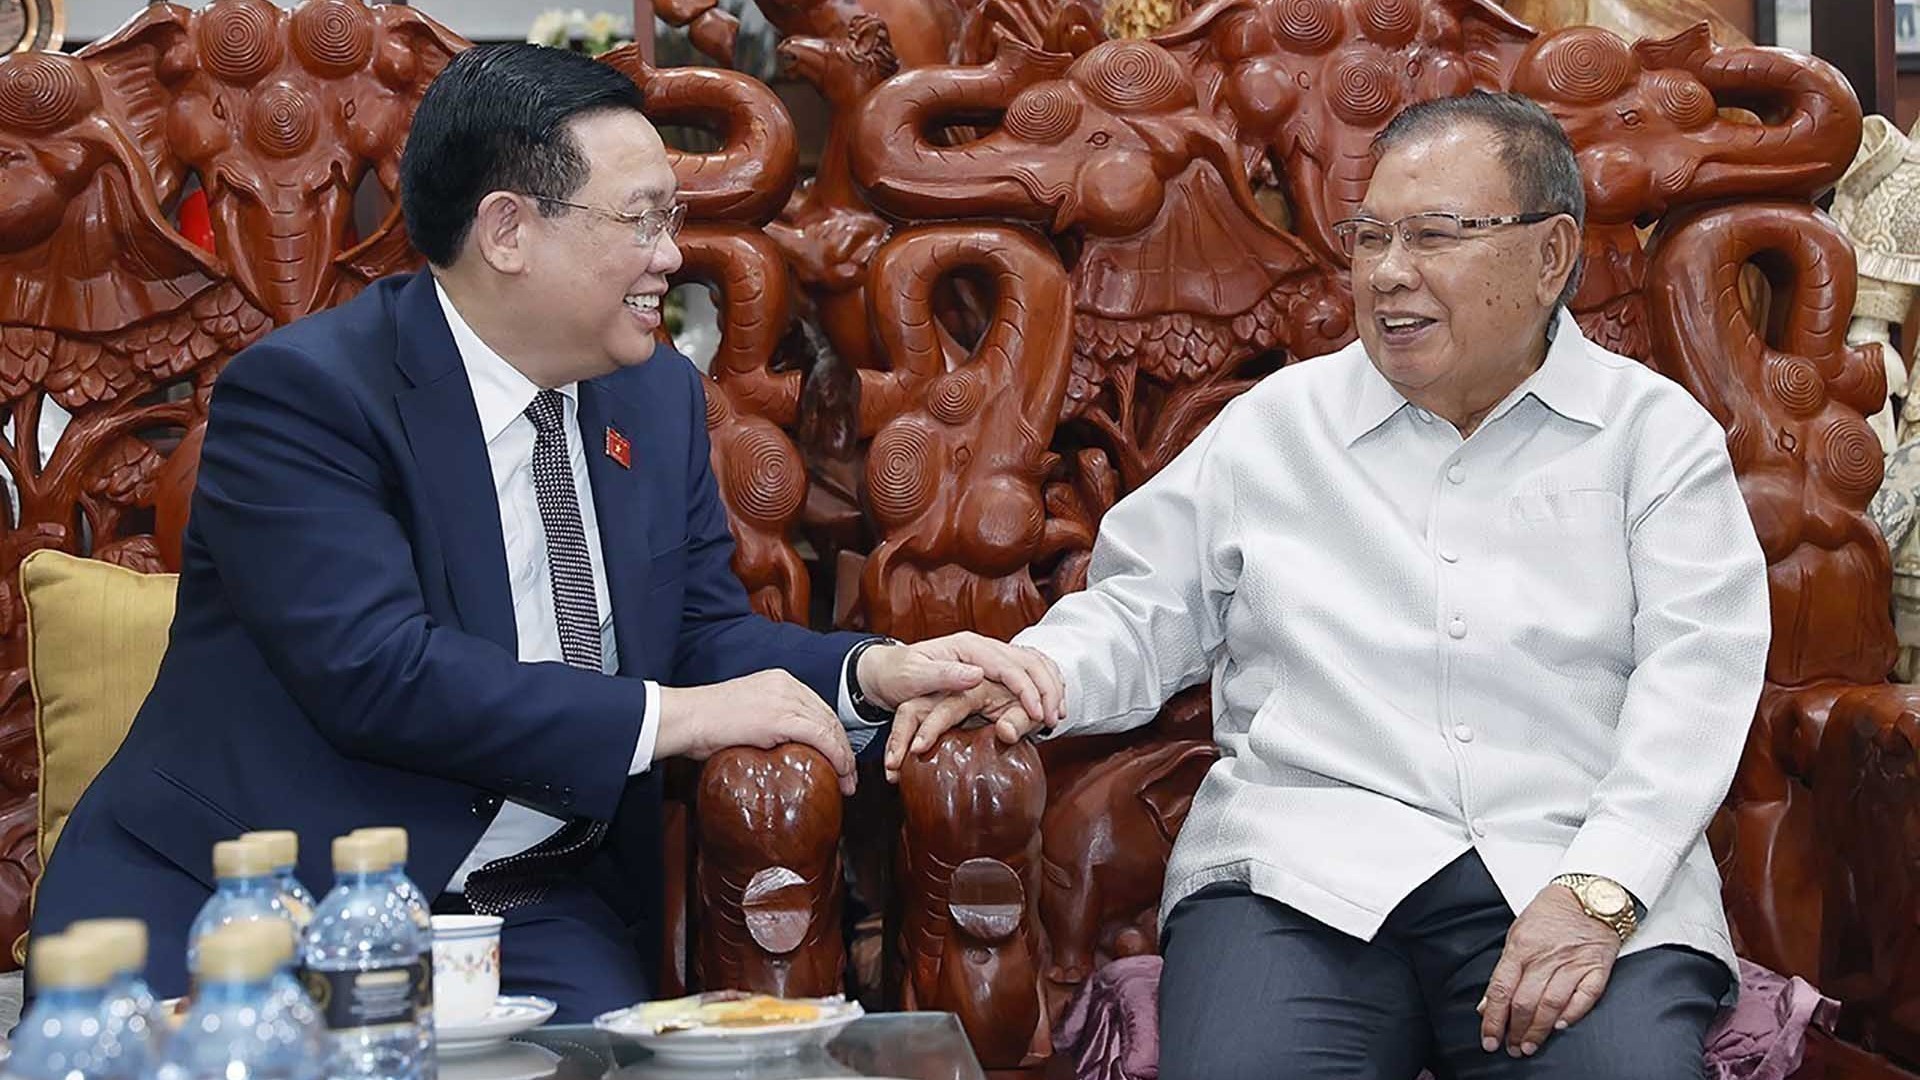 Chủ tịch Quốc hội Vương Đình Huệ thăm các đồng chí nguyên lãnh đạo cấp cao của Lào